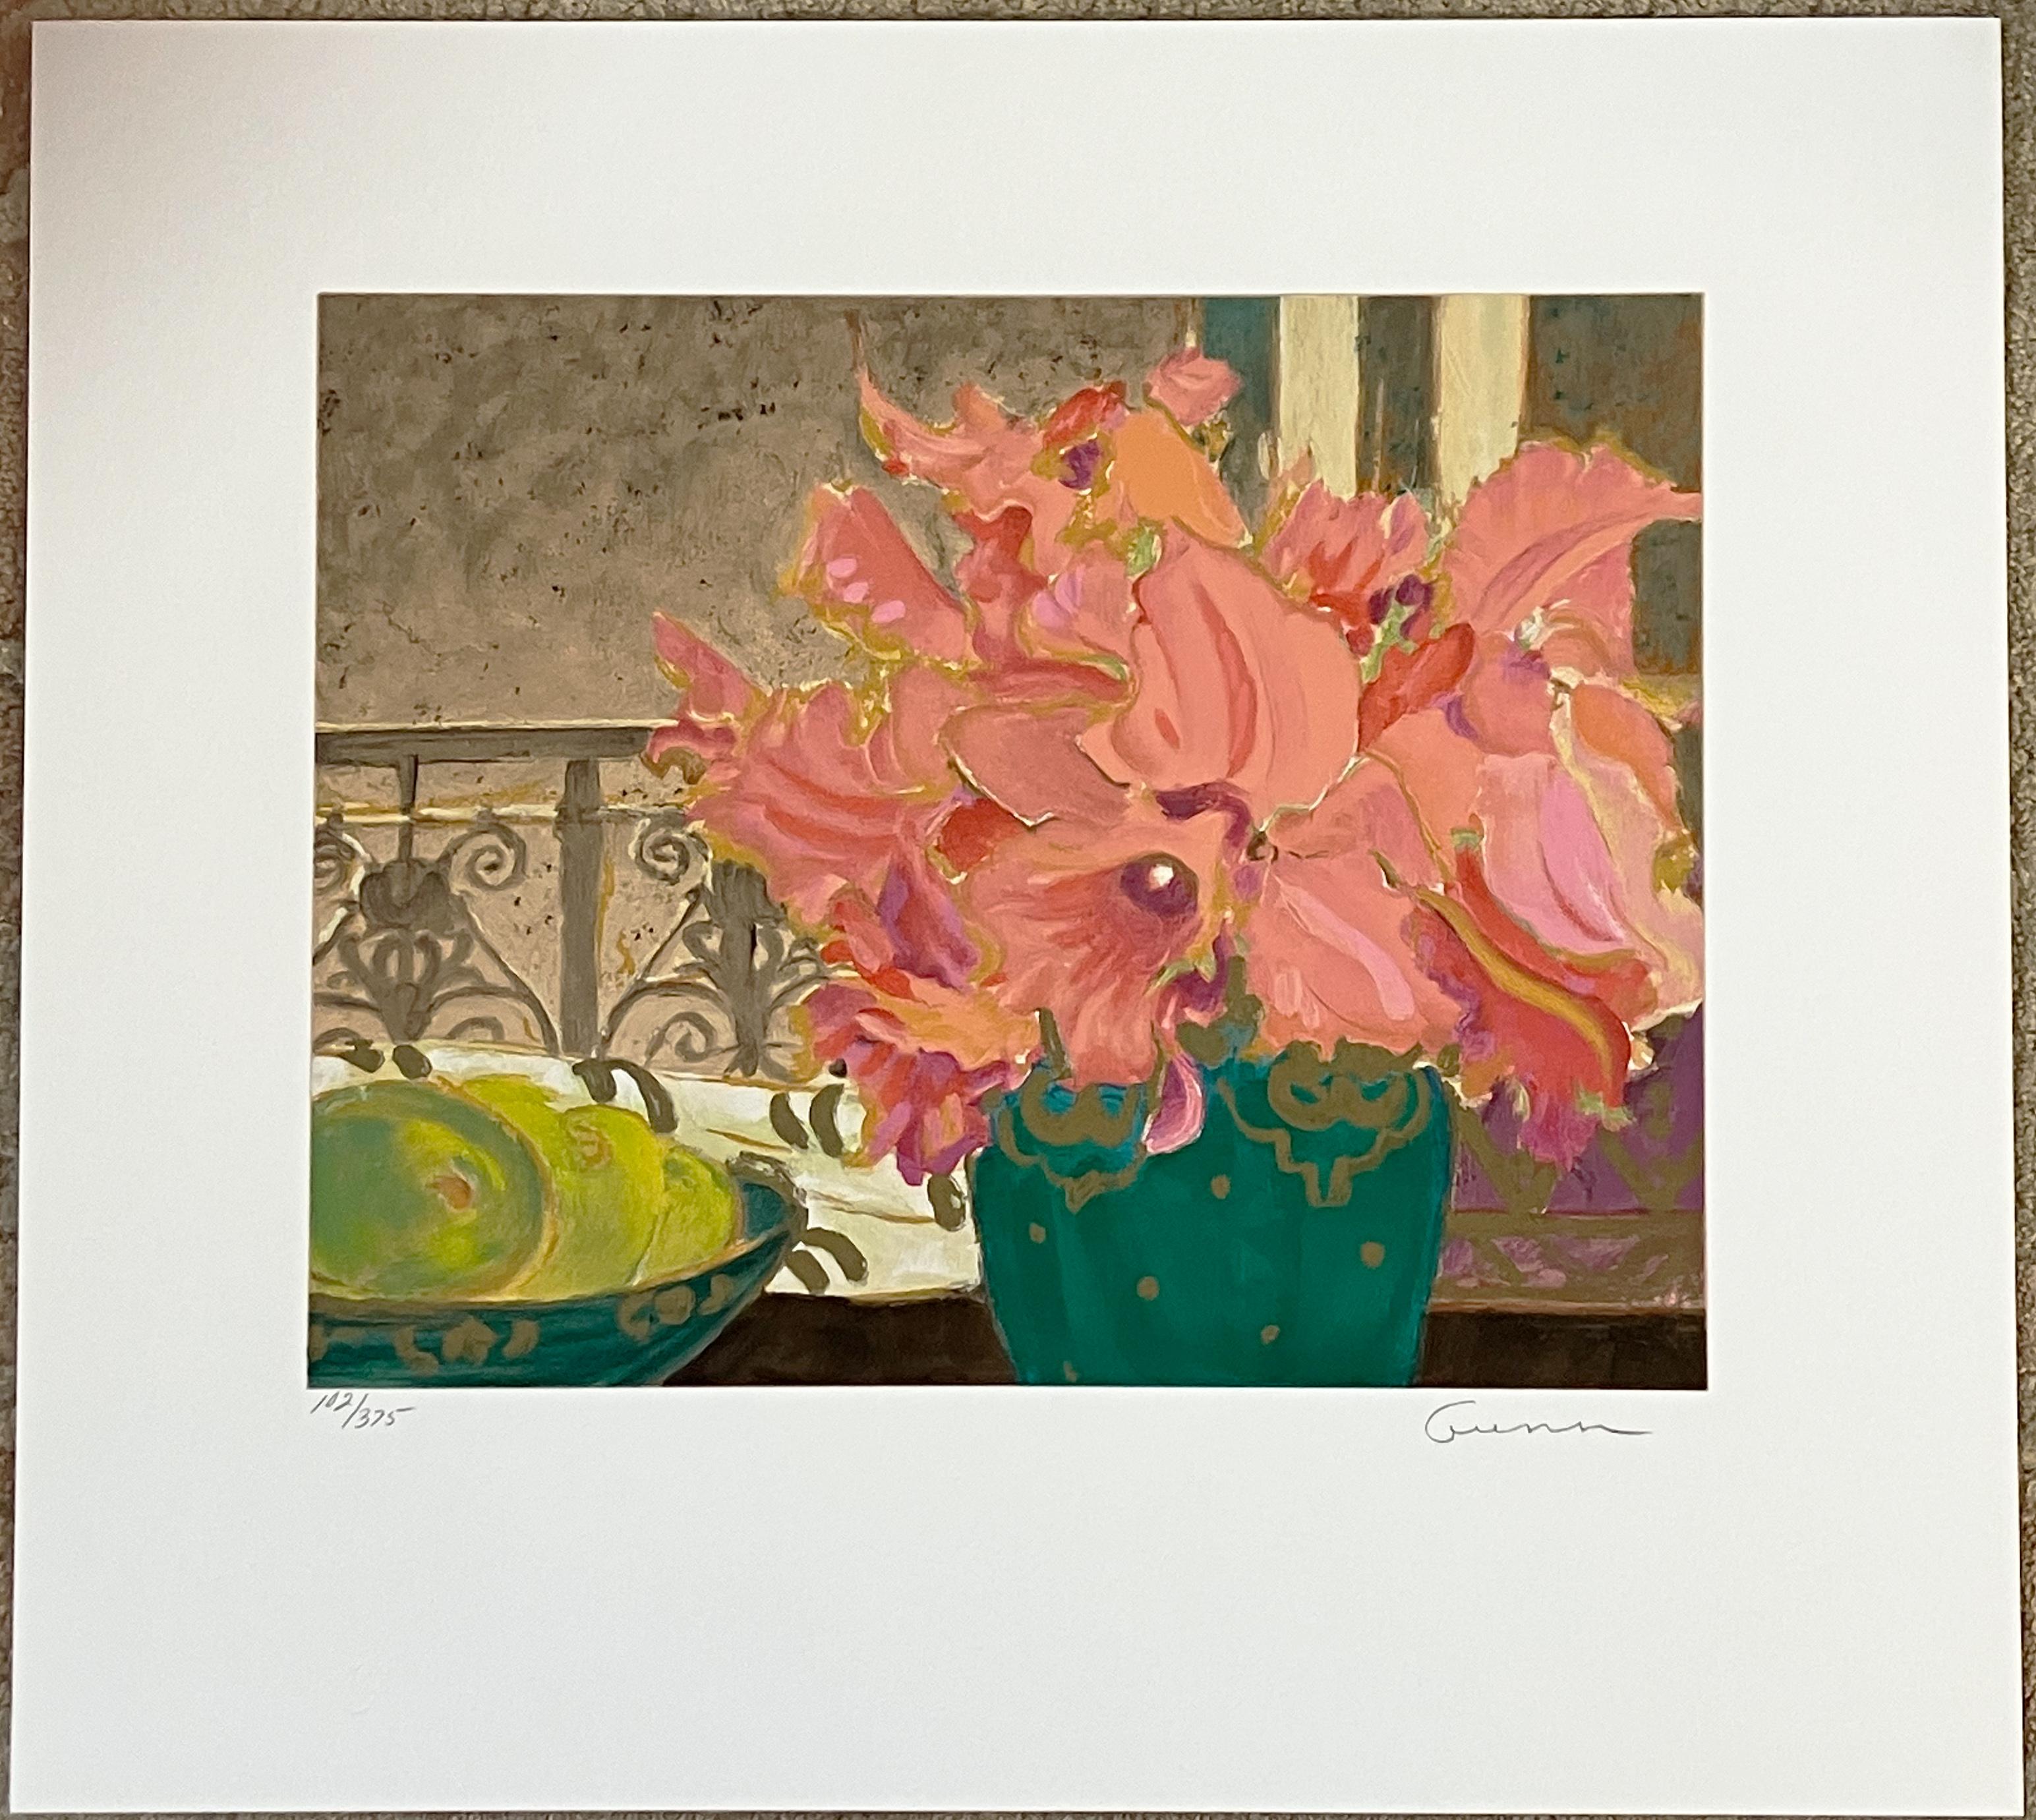 Künstlerin: Ellen Gunn (1951- )
Titel: Petite Fleur Suite I
Medium: Siebdruck 
Bildgröße: 11 x 14 Zoll
Blattgröße: 18 x 20 Zoll
Signatur: unten rechts
Auflage: 375 Diese: 102/375

Dieser schöne Druck ist ein Blumenstillleben. Es handelt sich um